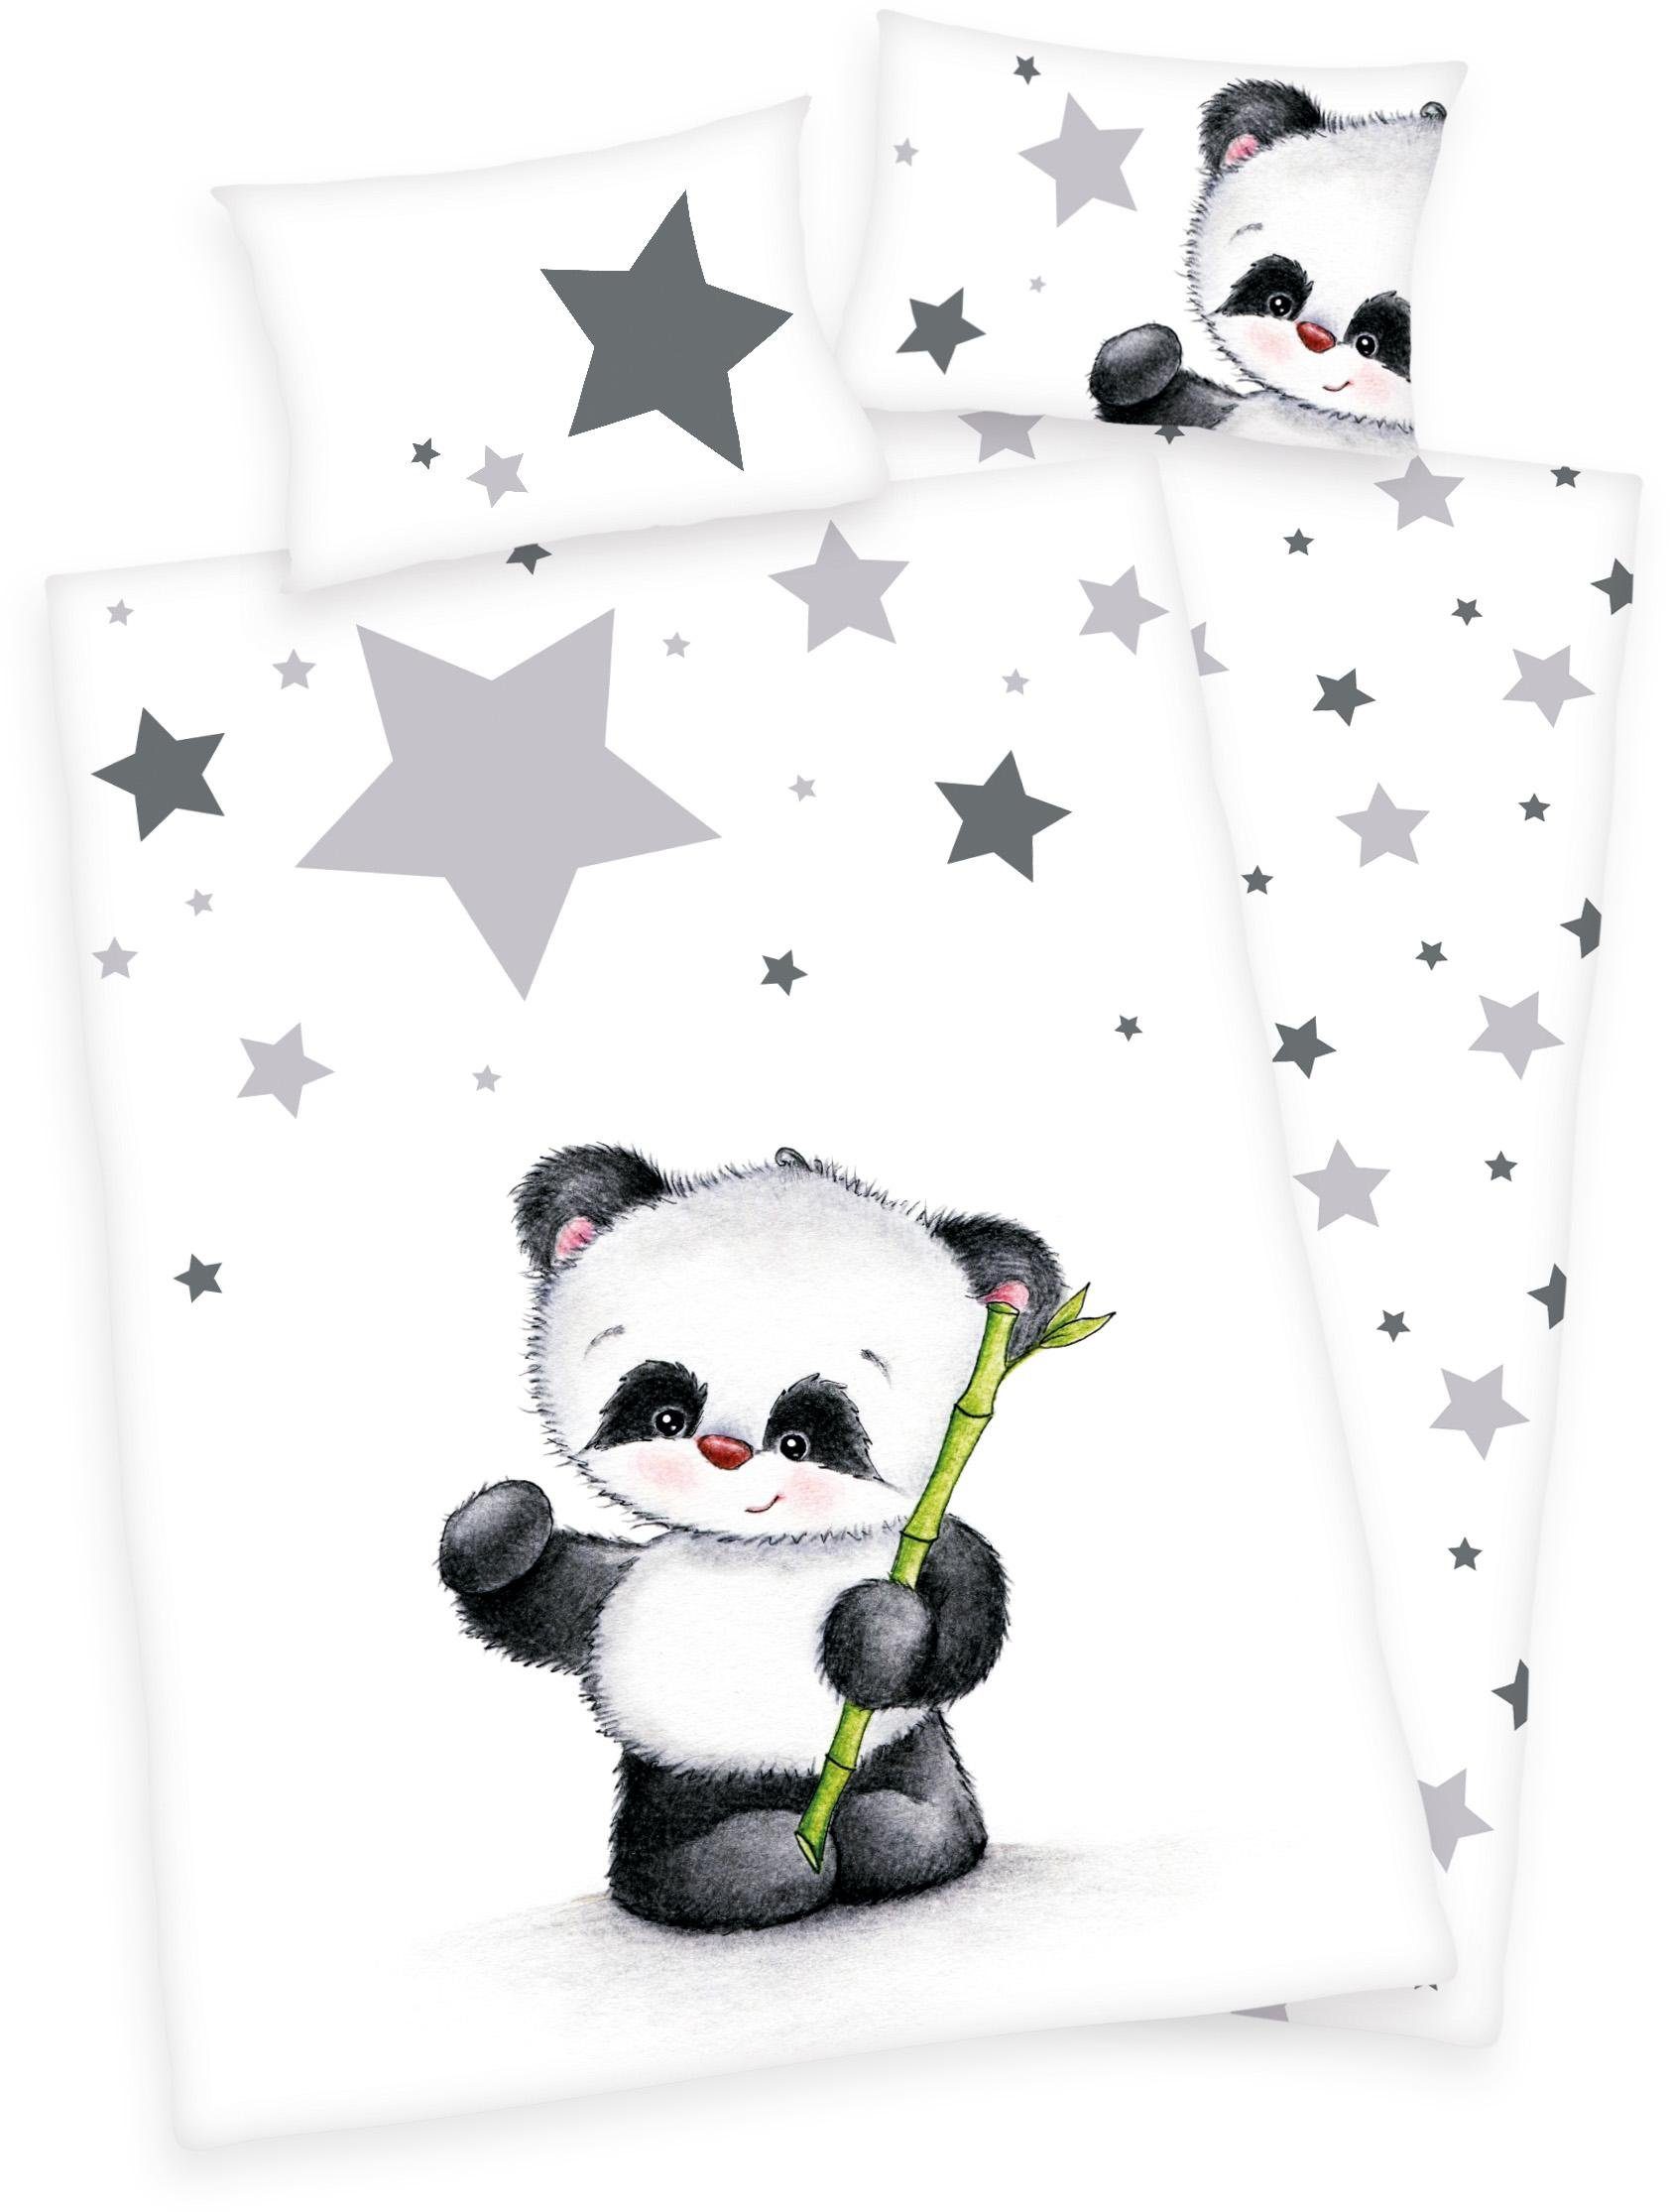 Babybettwäsche Jana Panda, Baby Best, Biber, 2 teilig, mit Panda